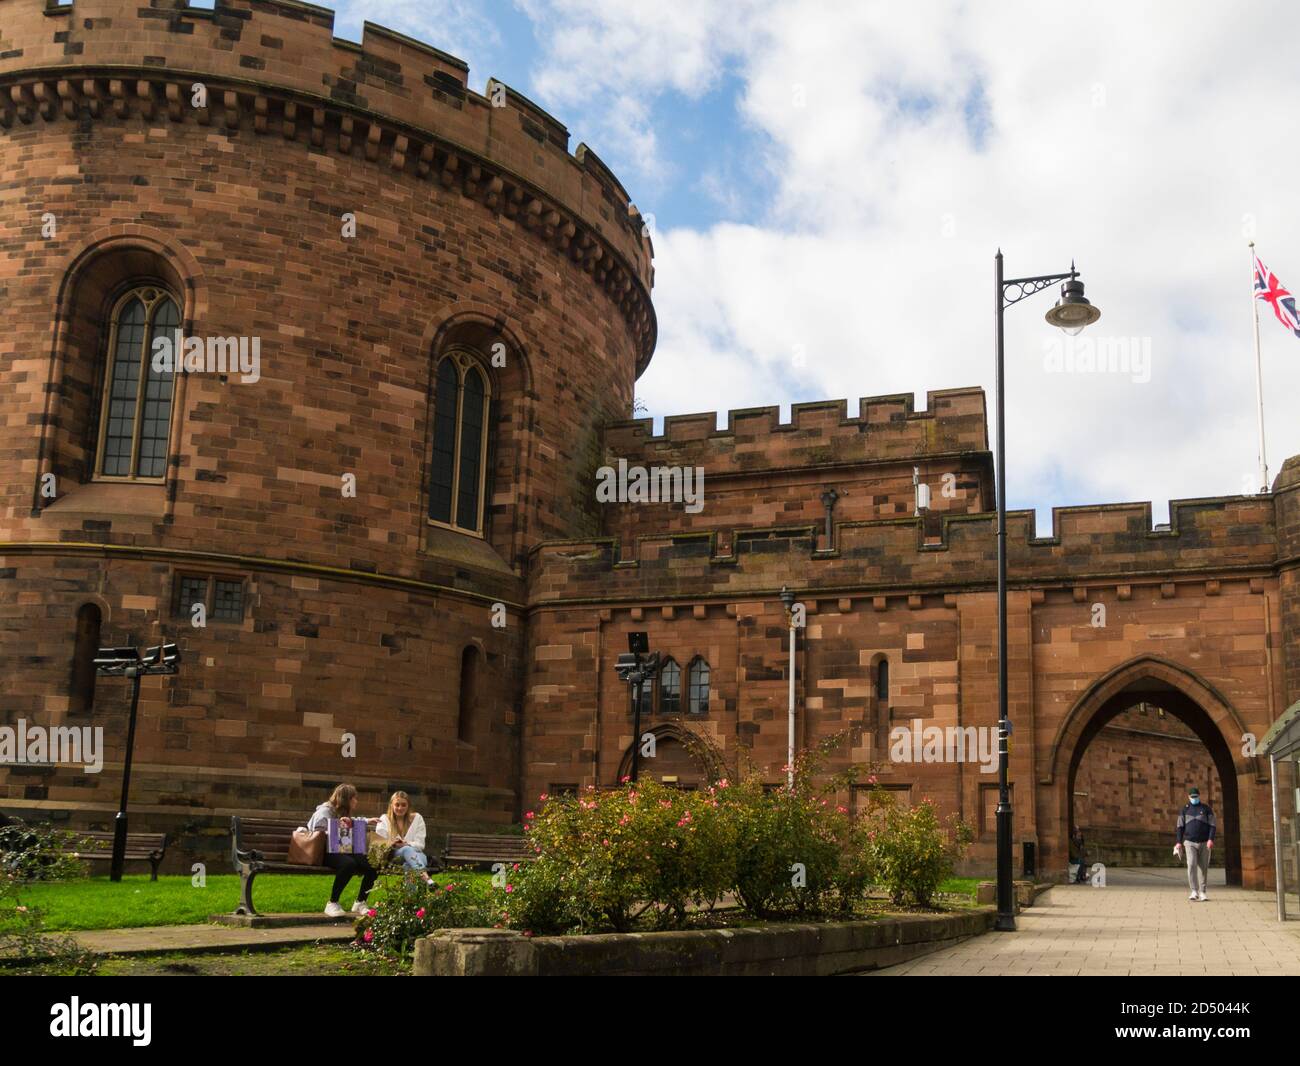 Citadelle de Carlisle ancienne forteresse médiévale sur la rue English à Carlisle, la tour Cumbria est classée Grade I Cumbria Angleterre Royaume-Uni Banque D'Images